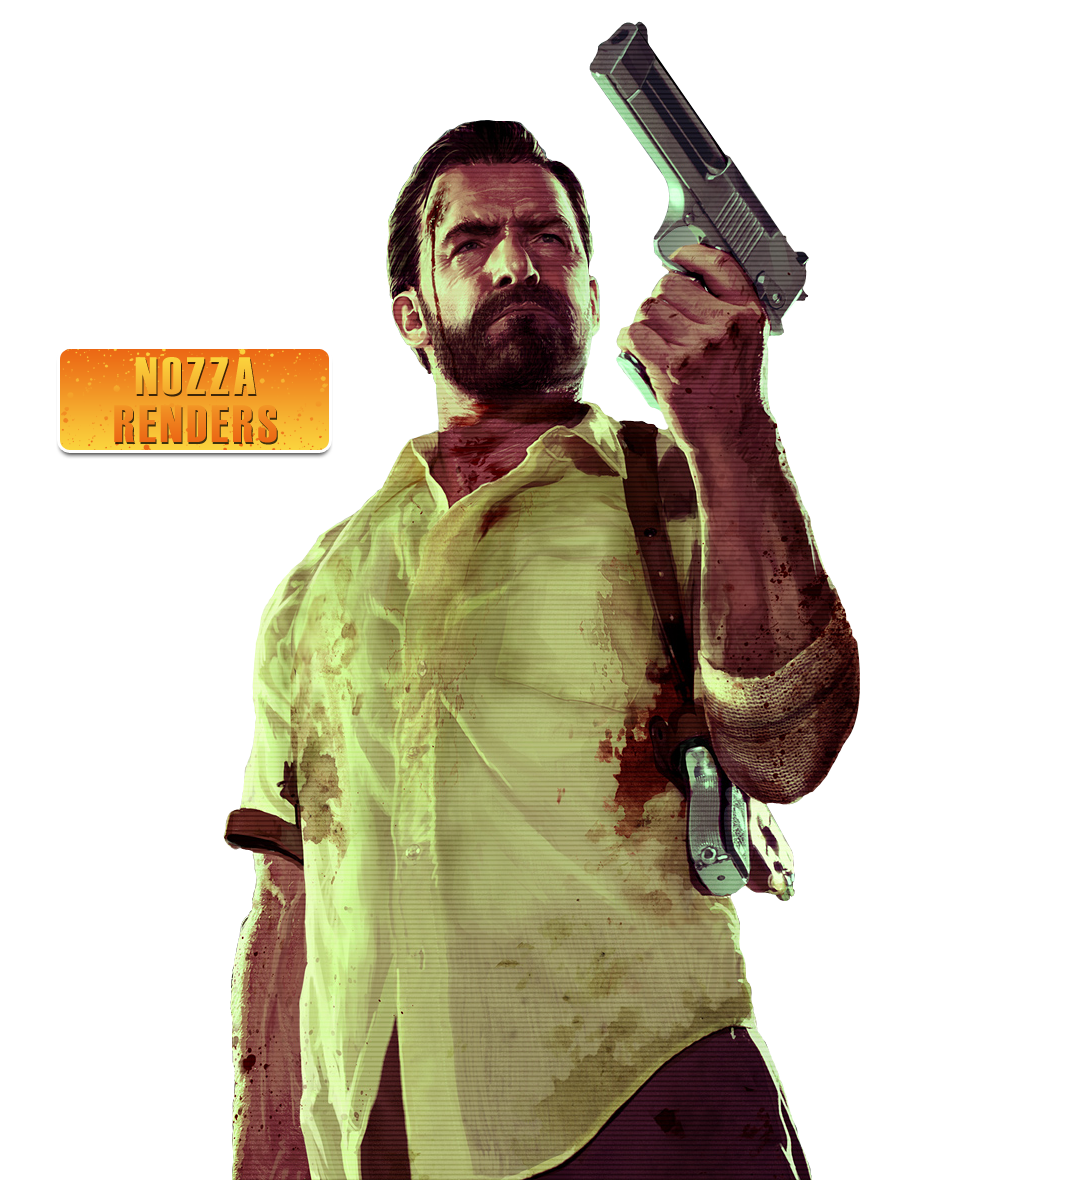 Max Payne 3 Icon v2 by Ni8cra